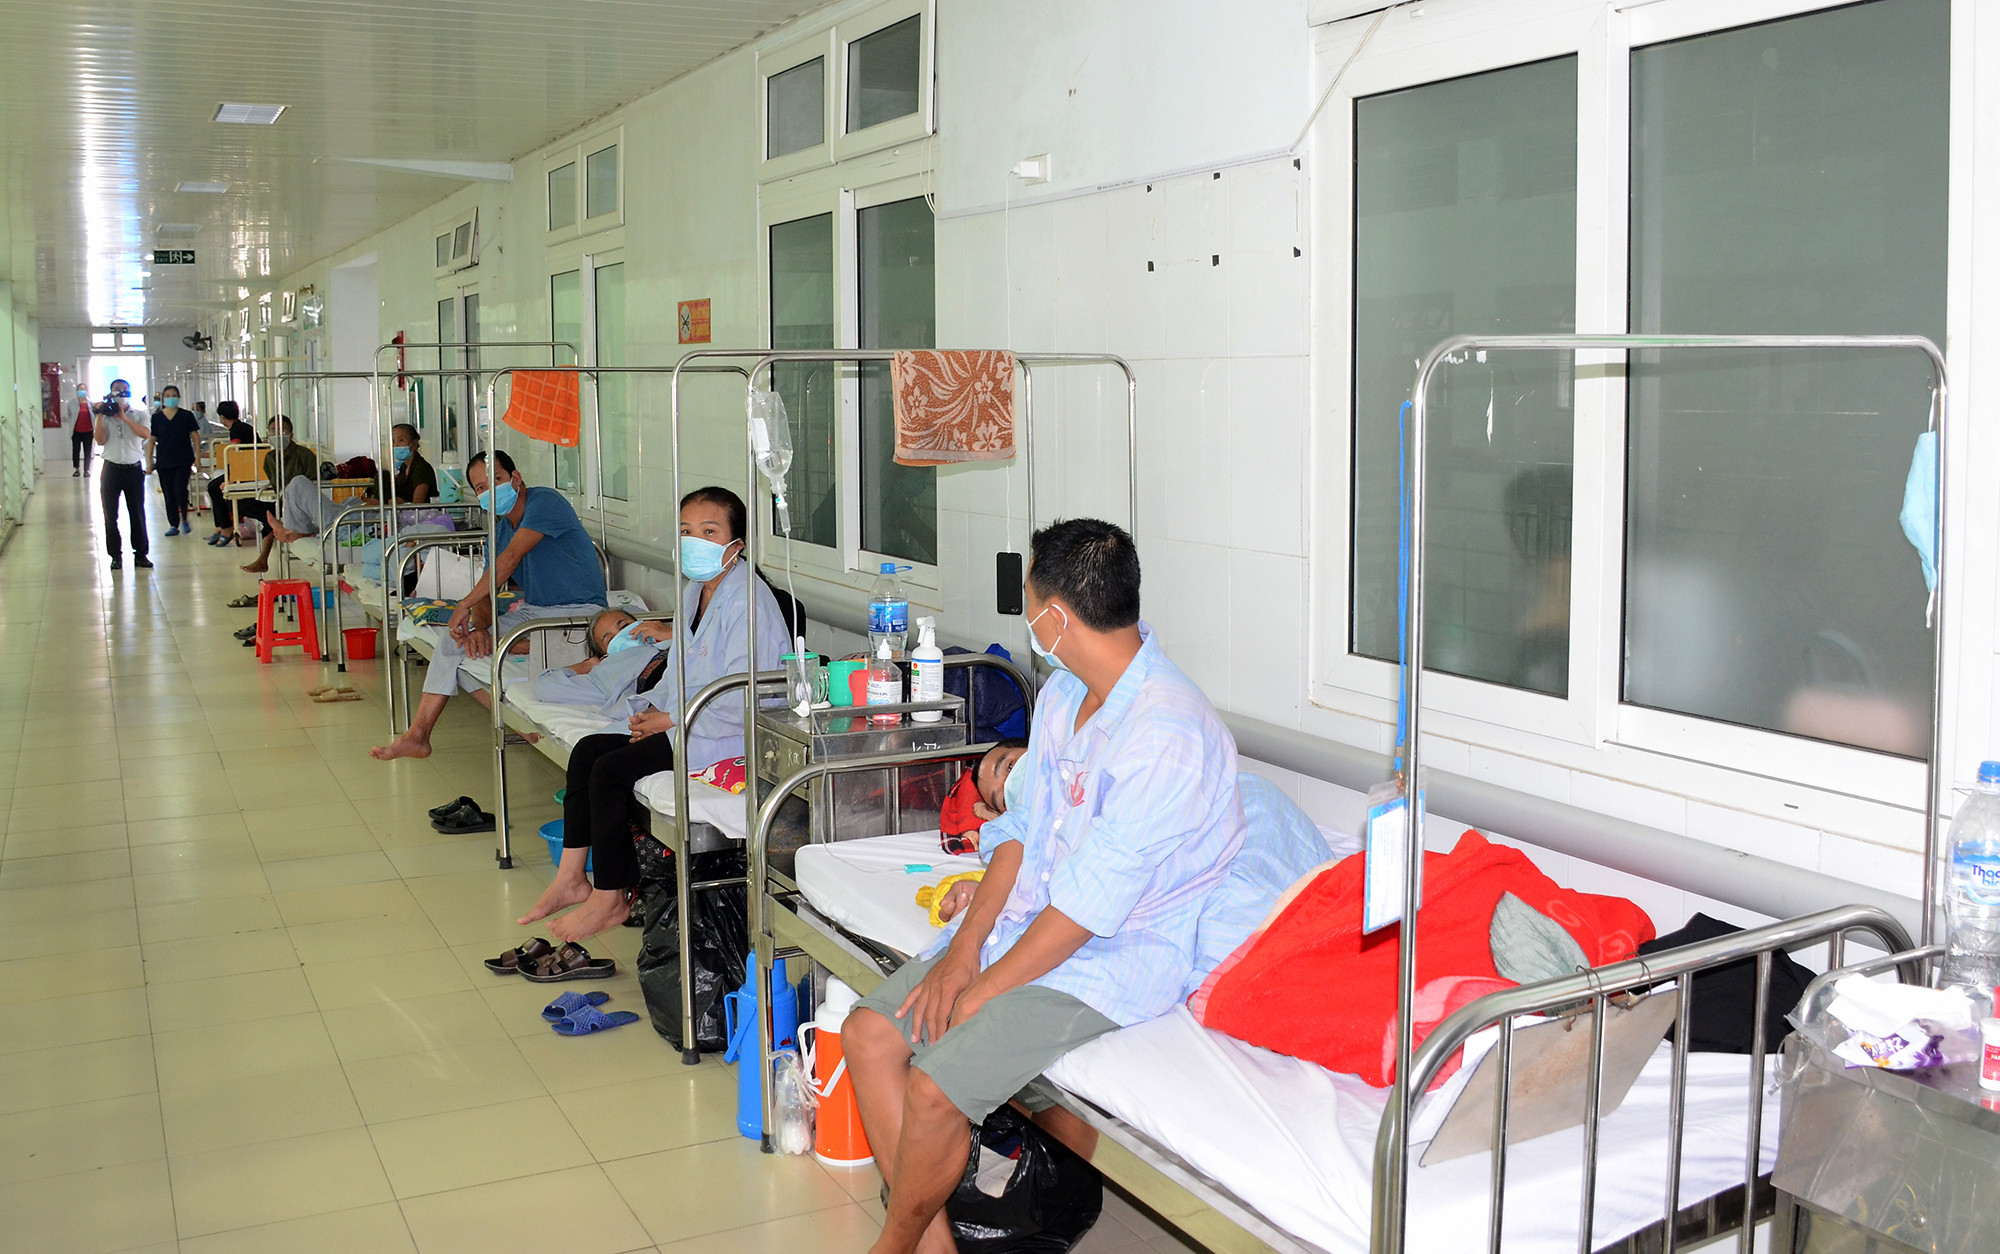 Bệnh viện HNĐK Nghệ An sắp xếp, bố trí lại khoa, phòng để chống dịch Covid-19. Ảnh: Thành Chung